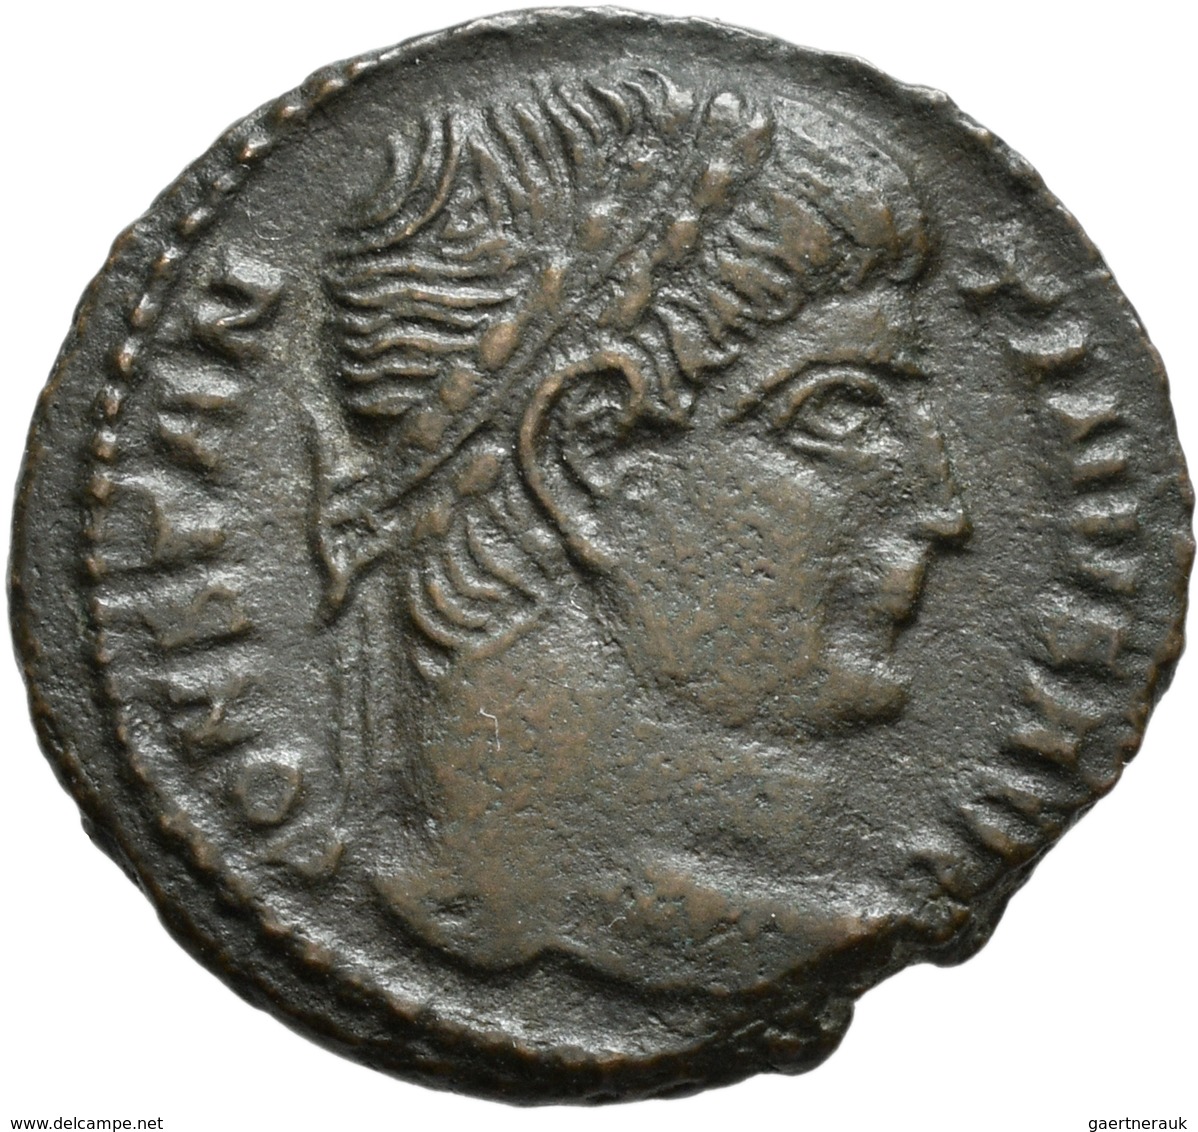 Antike: Gemischtes Lot von 22 antiken Münzen.Kelten, Griechen, Römer, unterschiedliche Erhaltungen.G